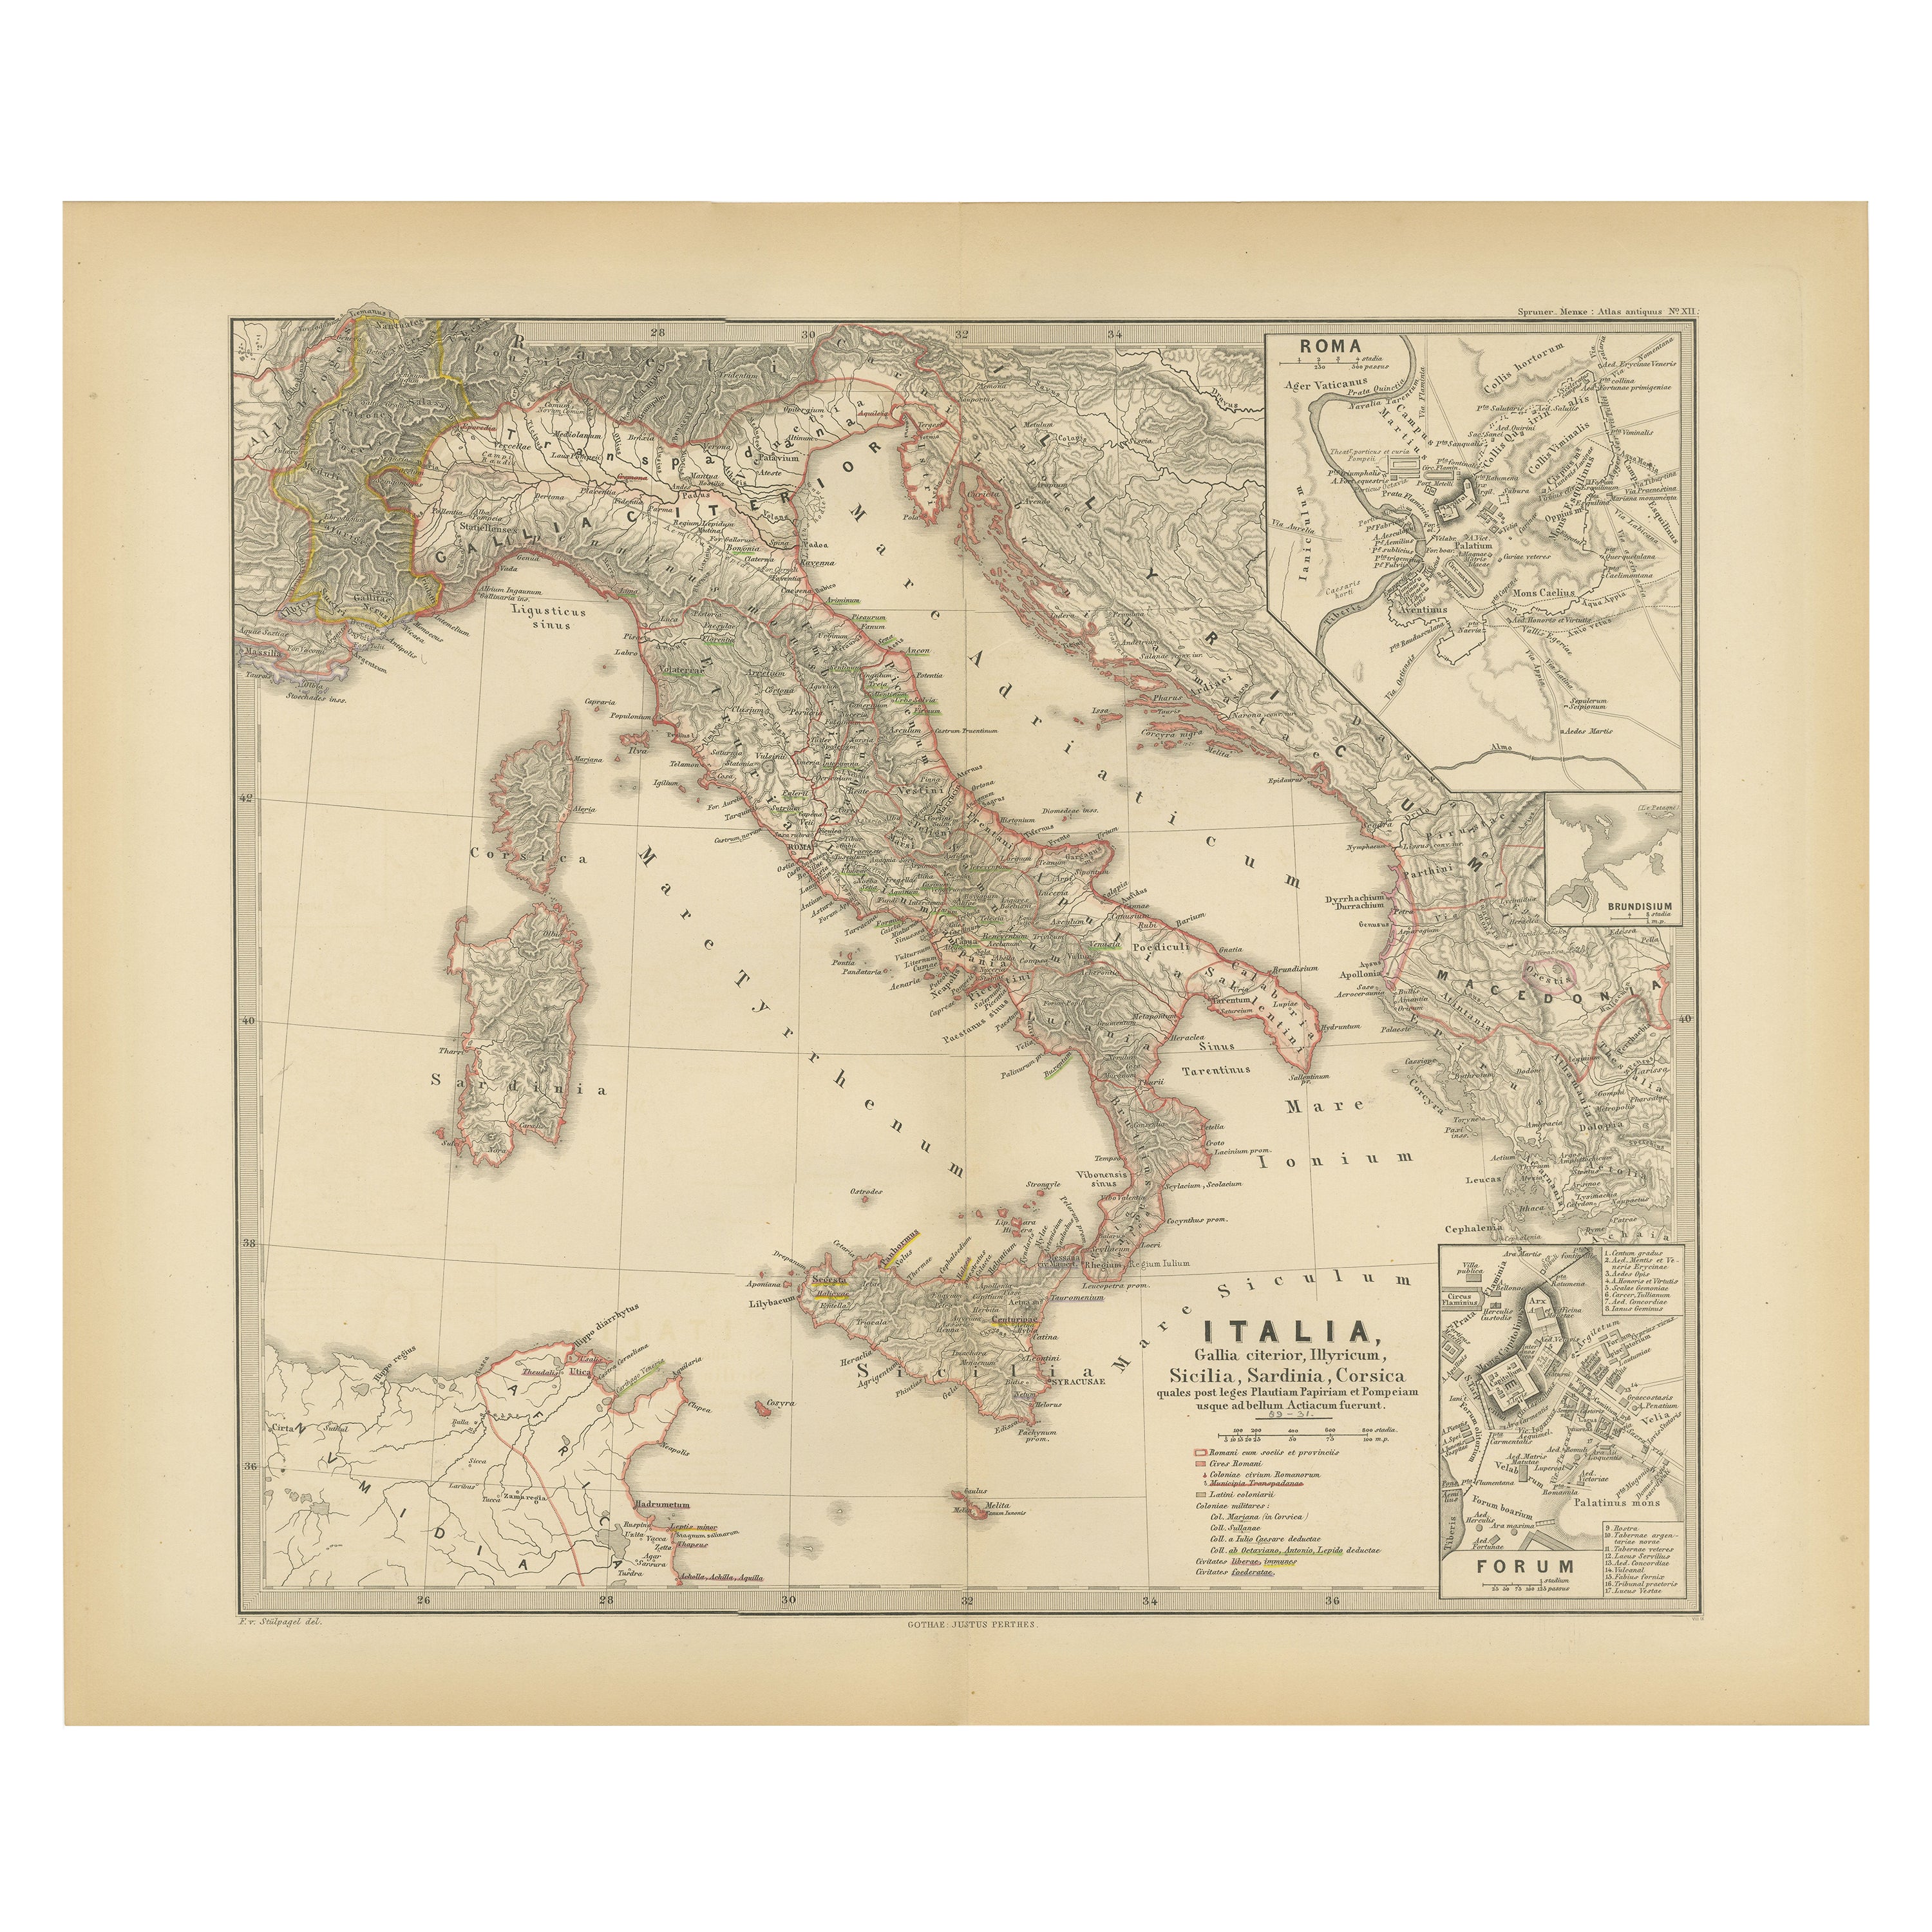 Karte der italienischen Halbinsel mit den Inseln Sizilien, Sardinien und Korsika, 1880